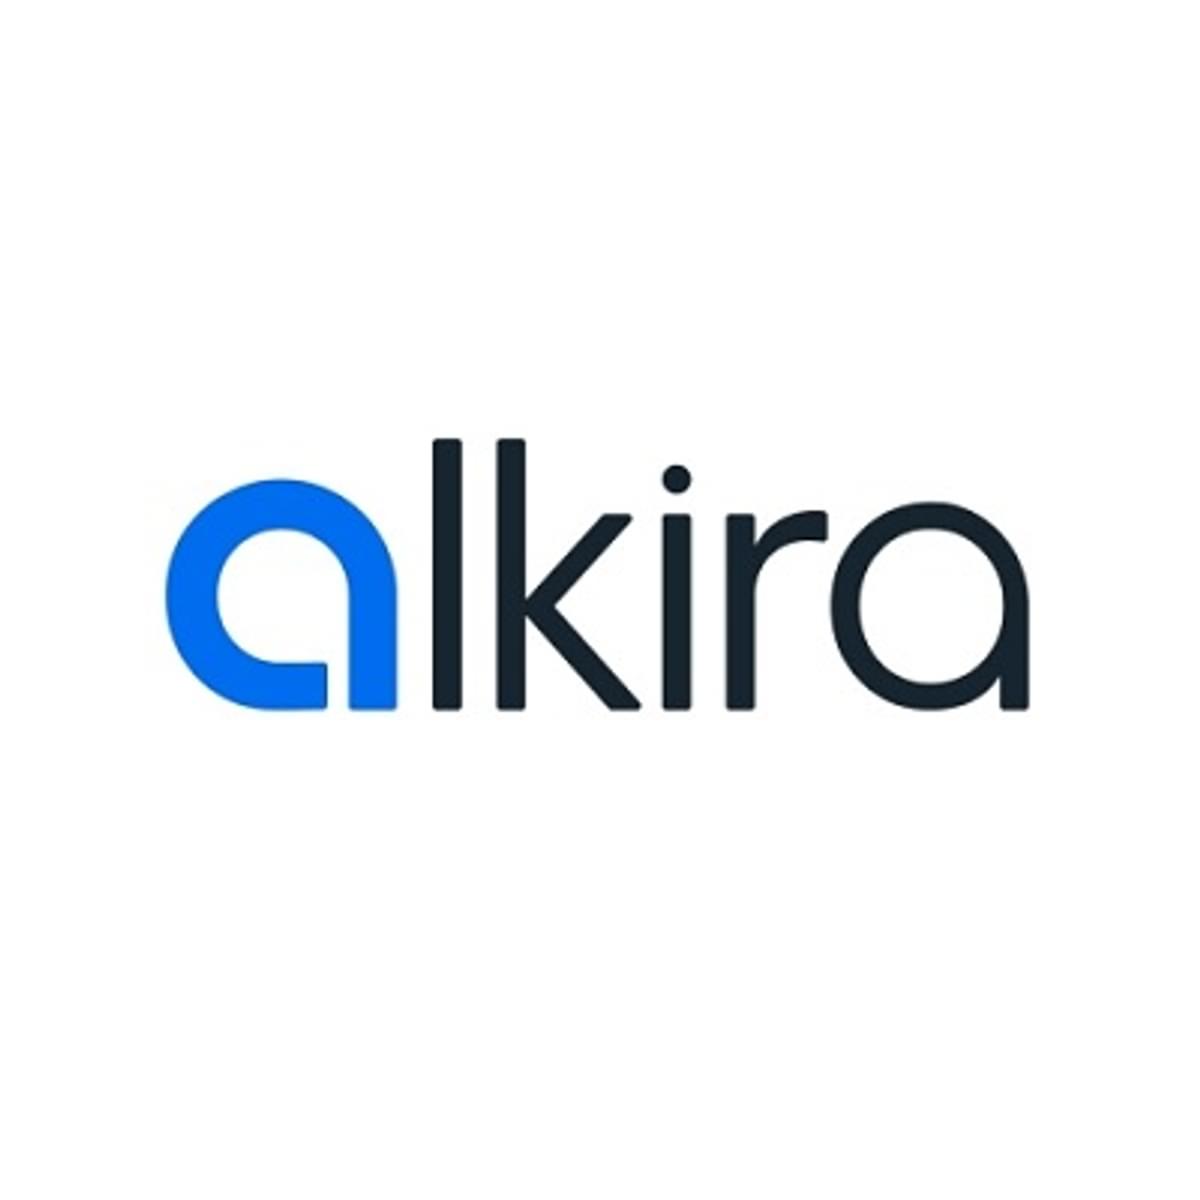 Alkira haalt flink kapitaal op voor uitbouw Network Cloud image